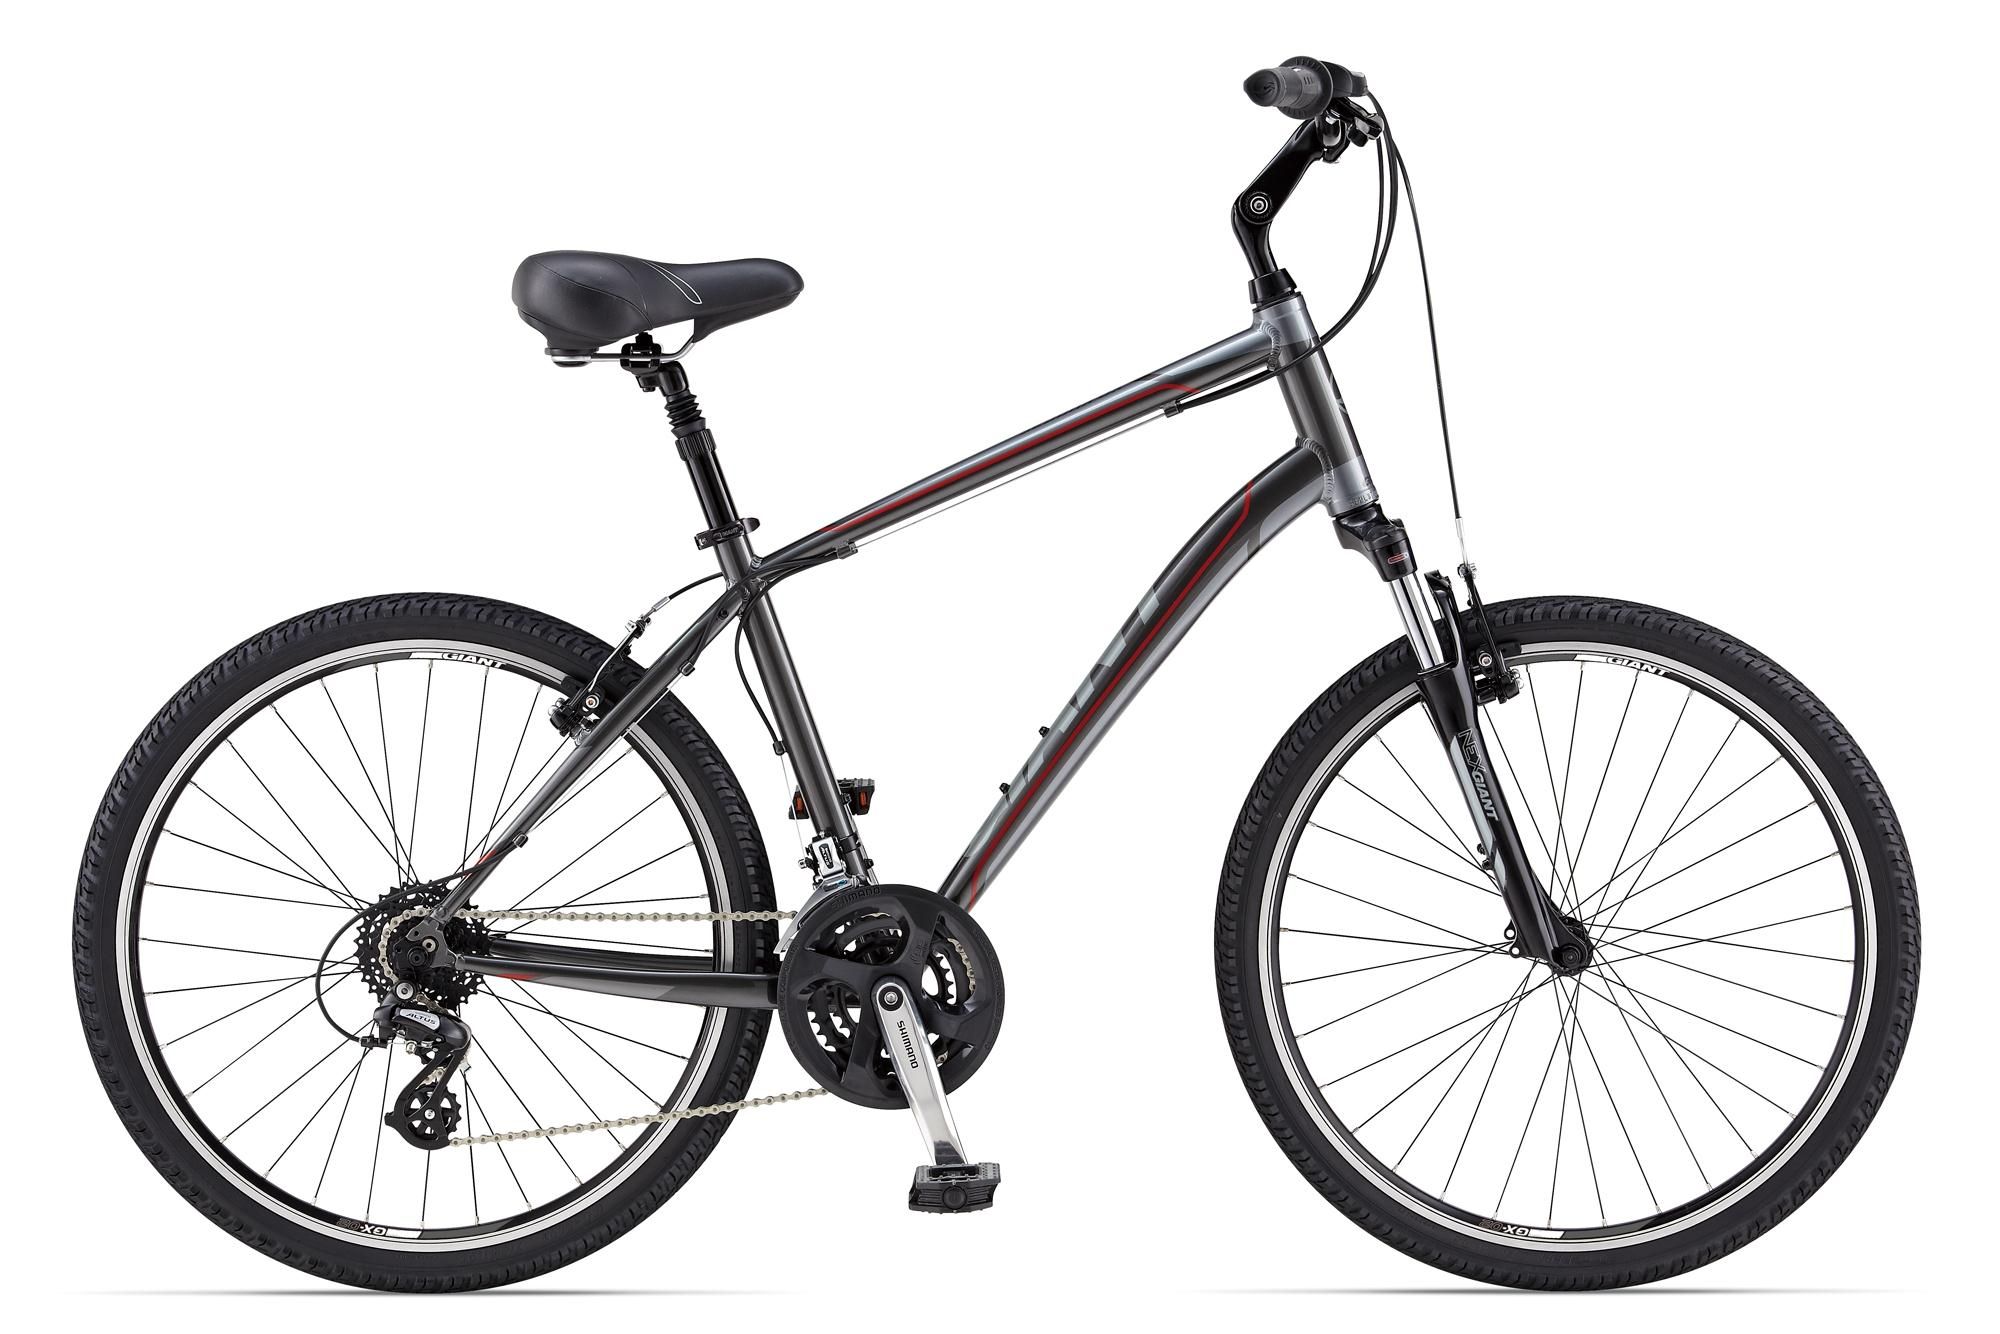  Велосипед Giant Sedona DX 2014